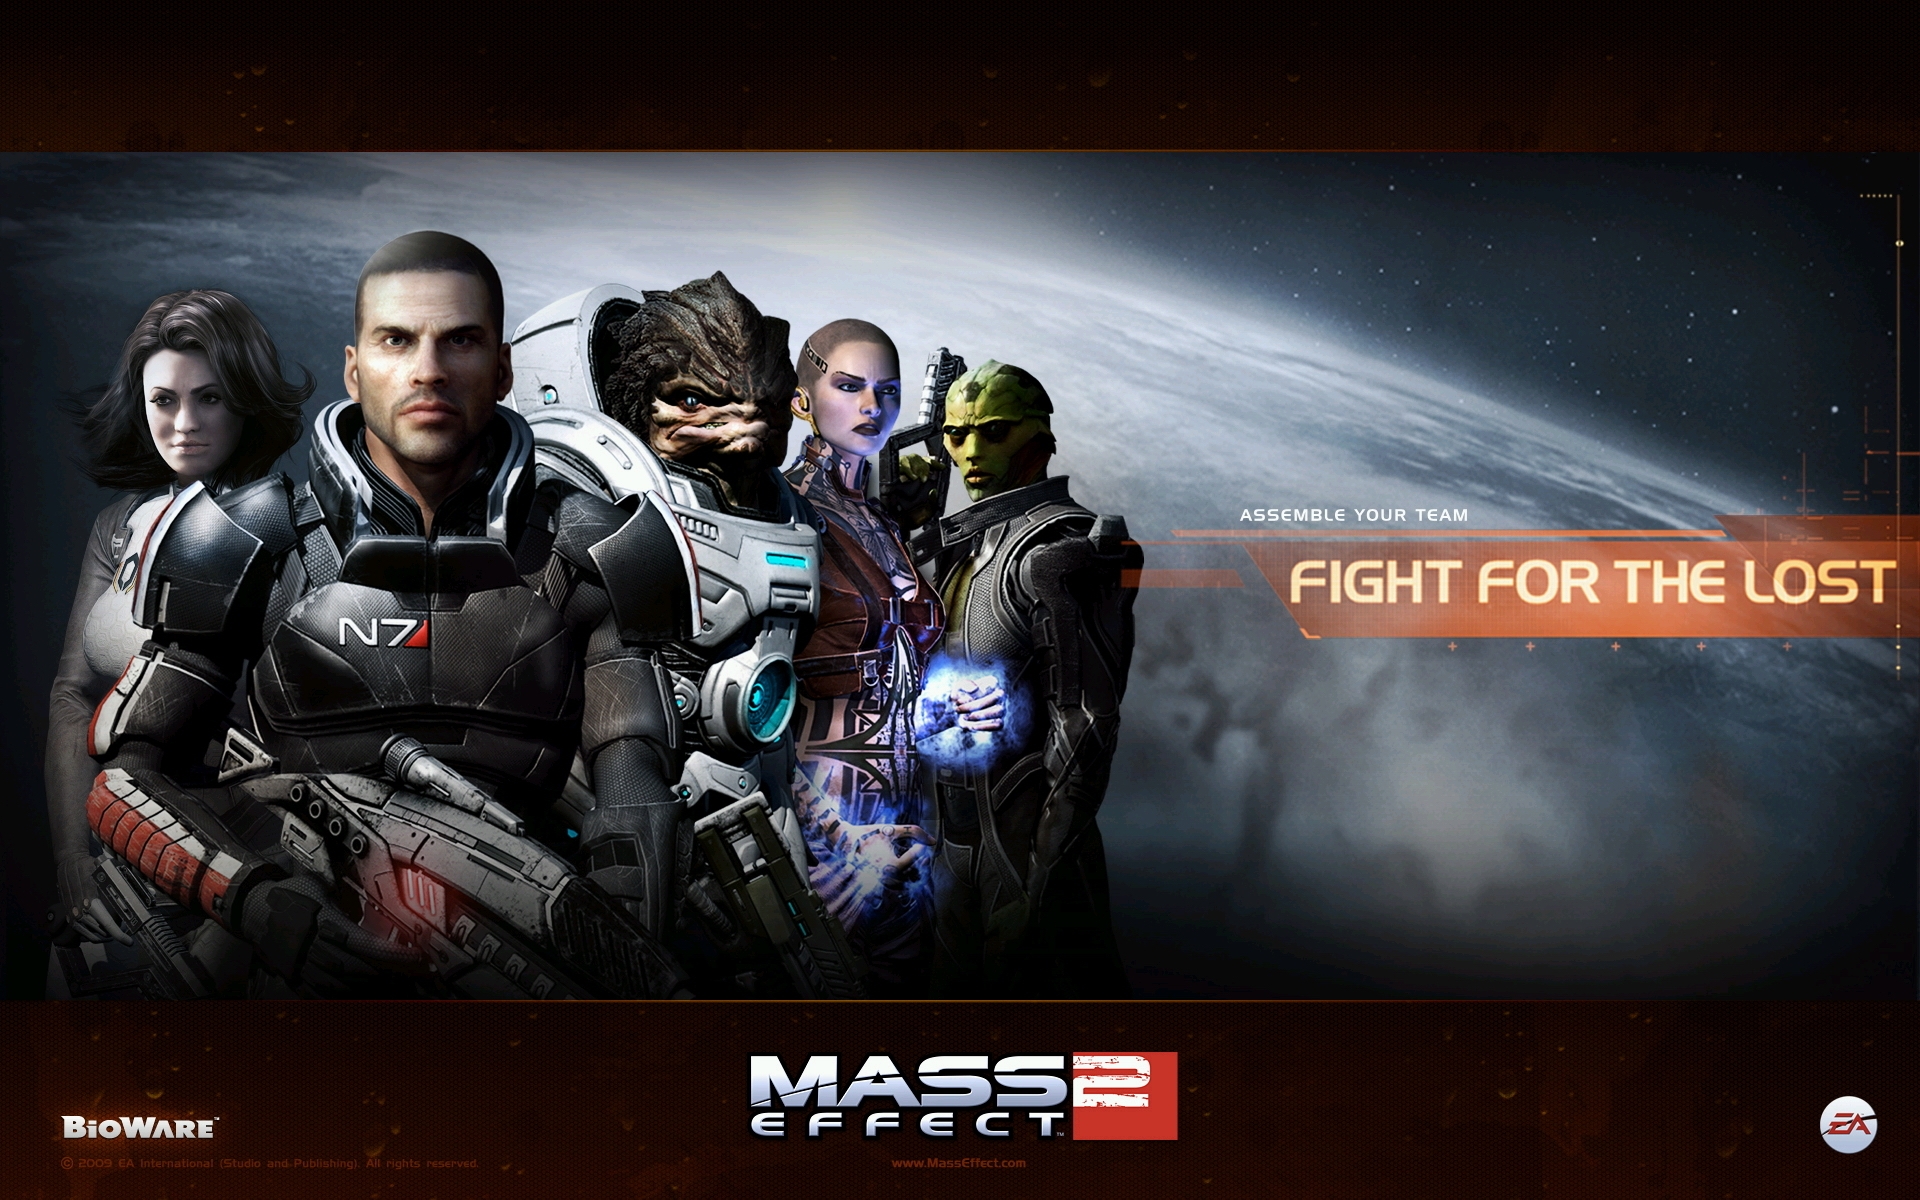 Mass Effect 2 for 1920 x 1200 widescreen resolution